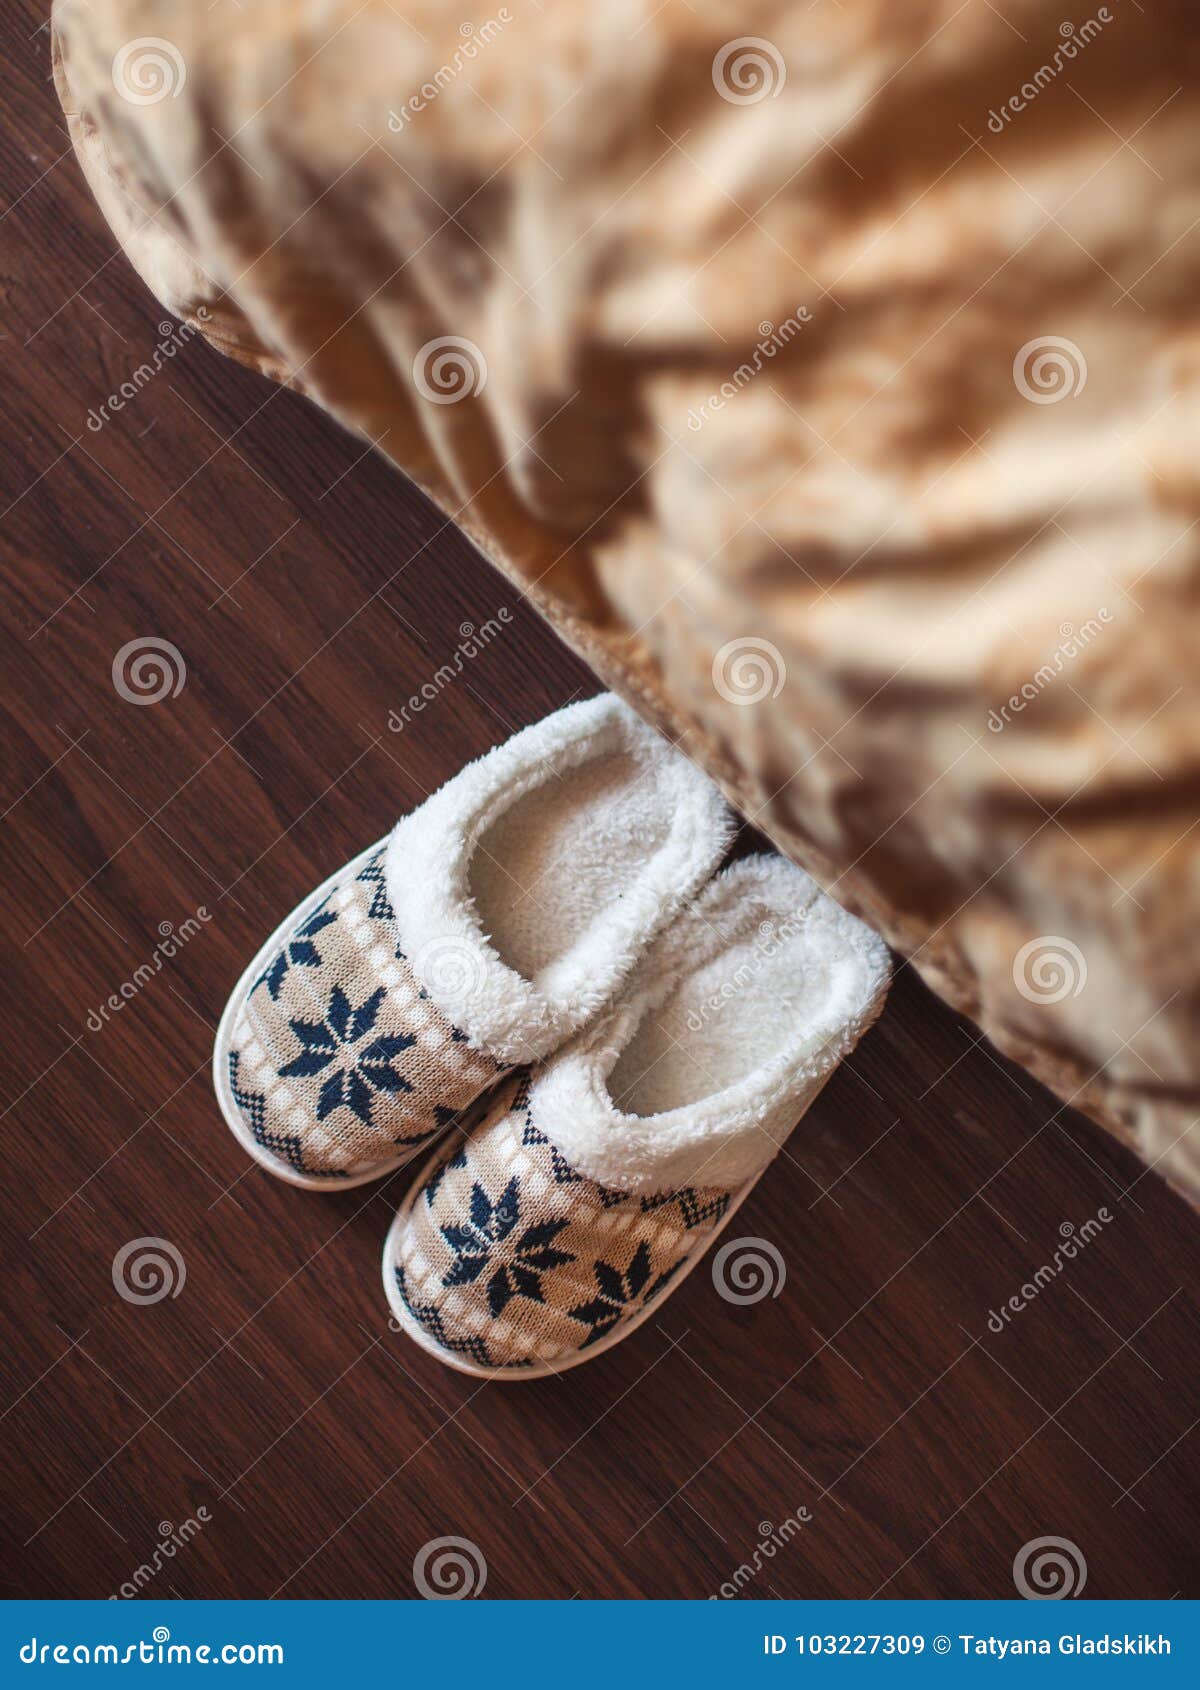 Pantoffels op vloer stock afbeelding. Image of mening - 103227309